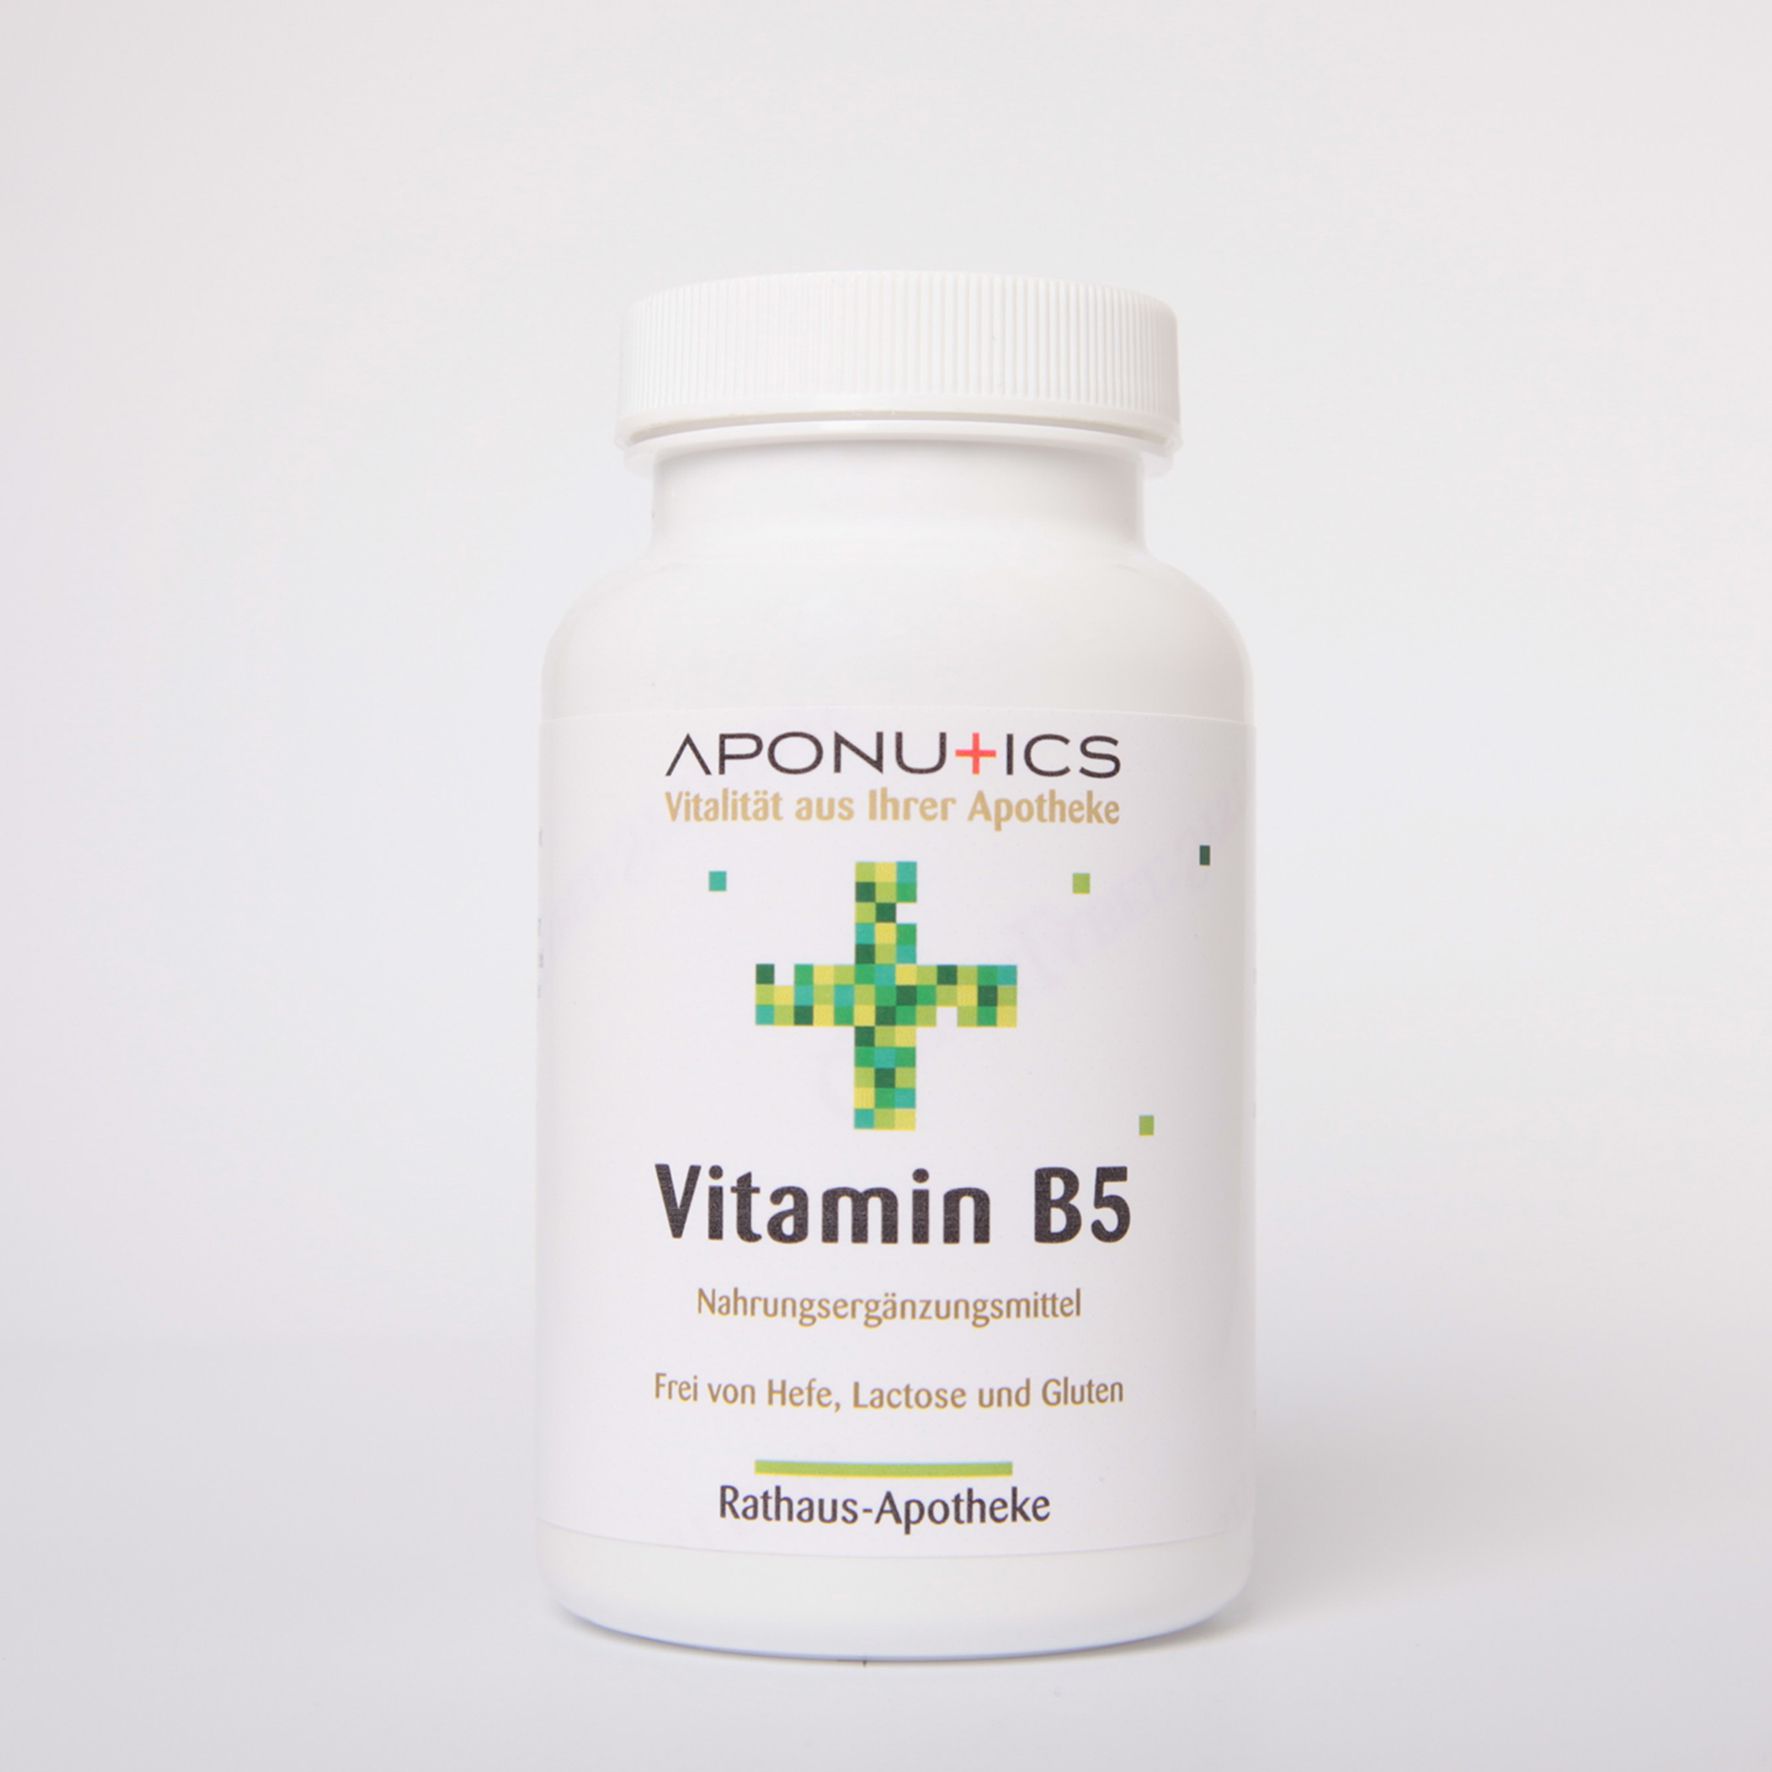 Aponutics Vitamin B5